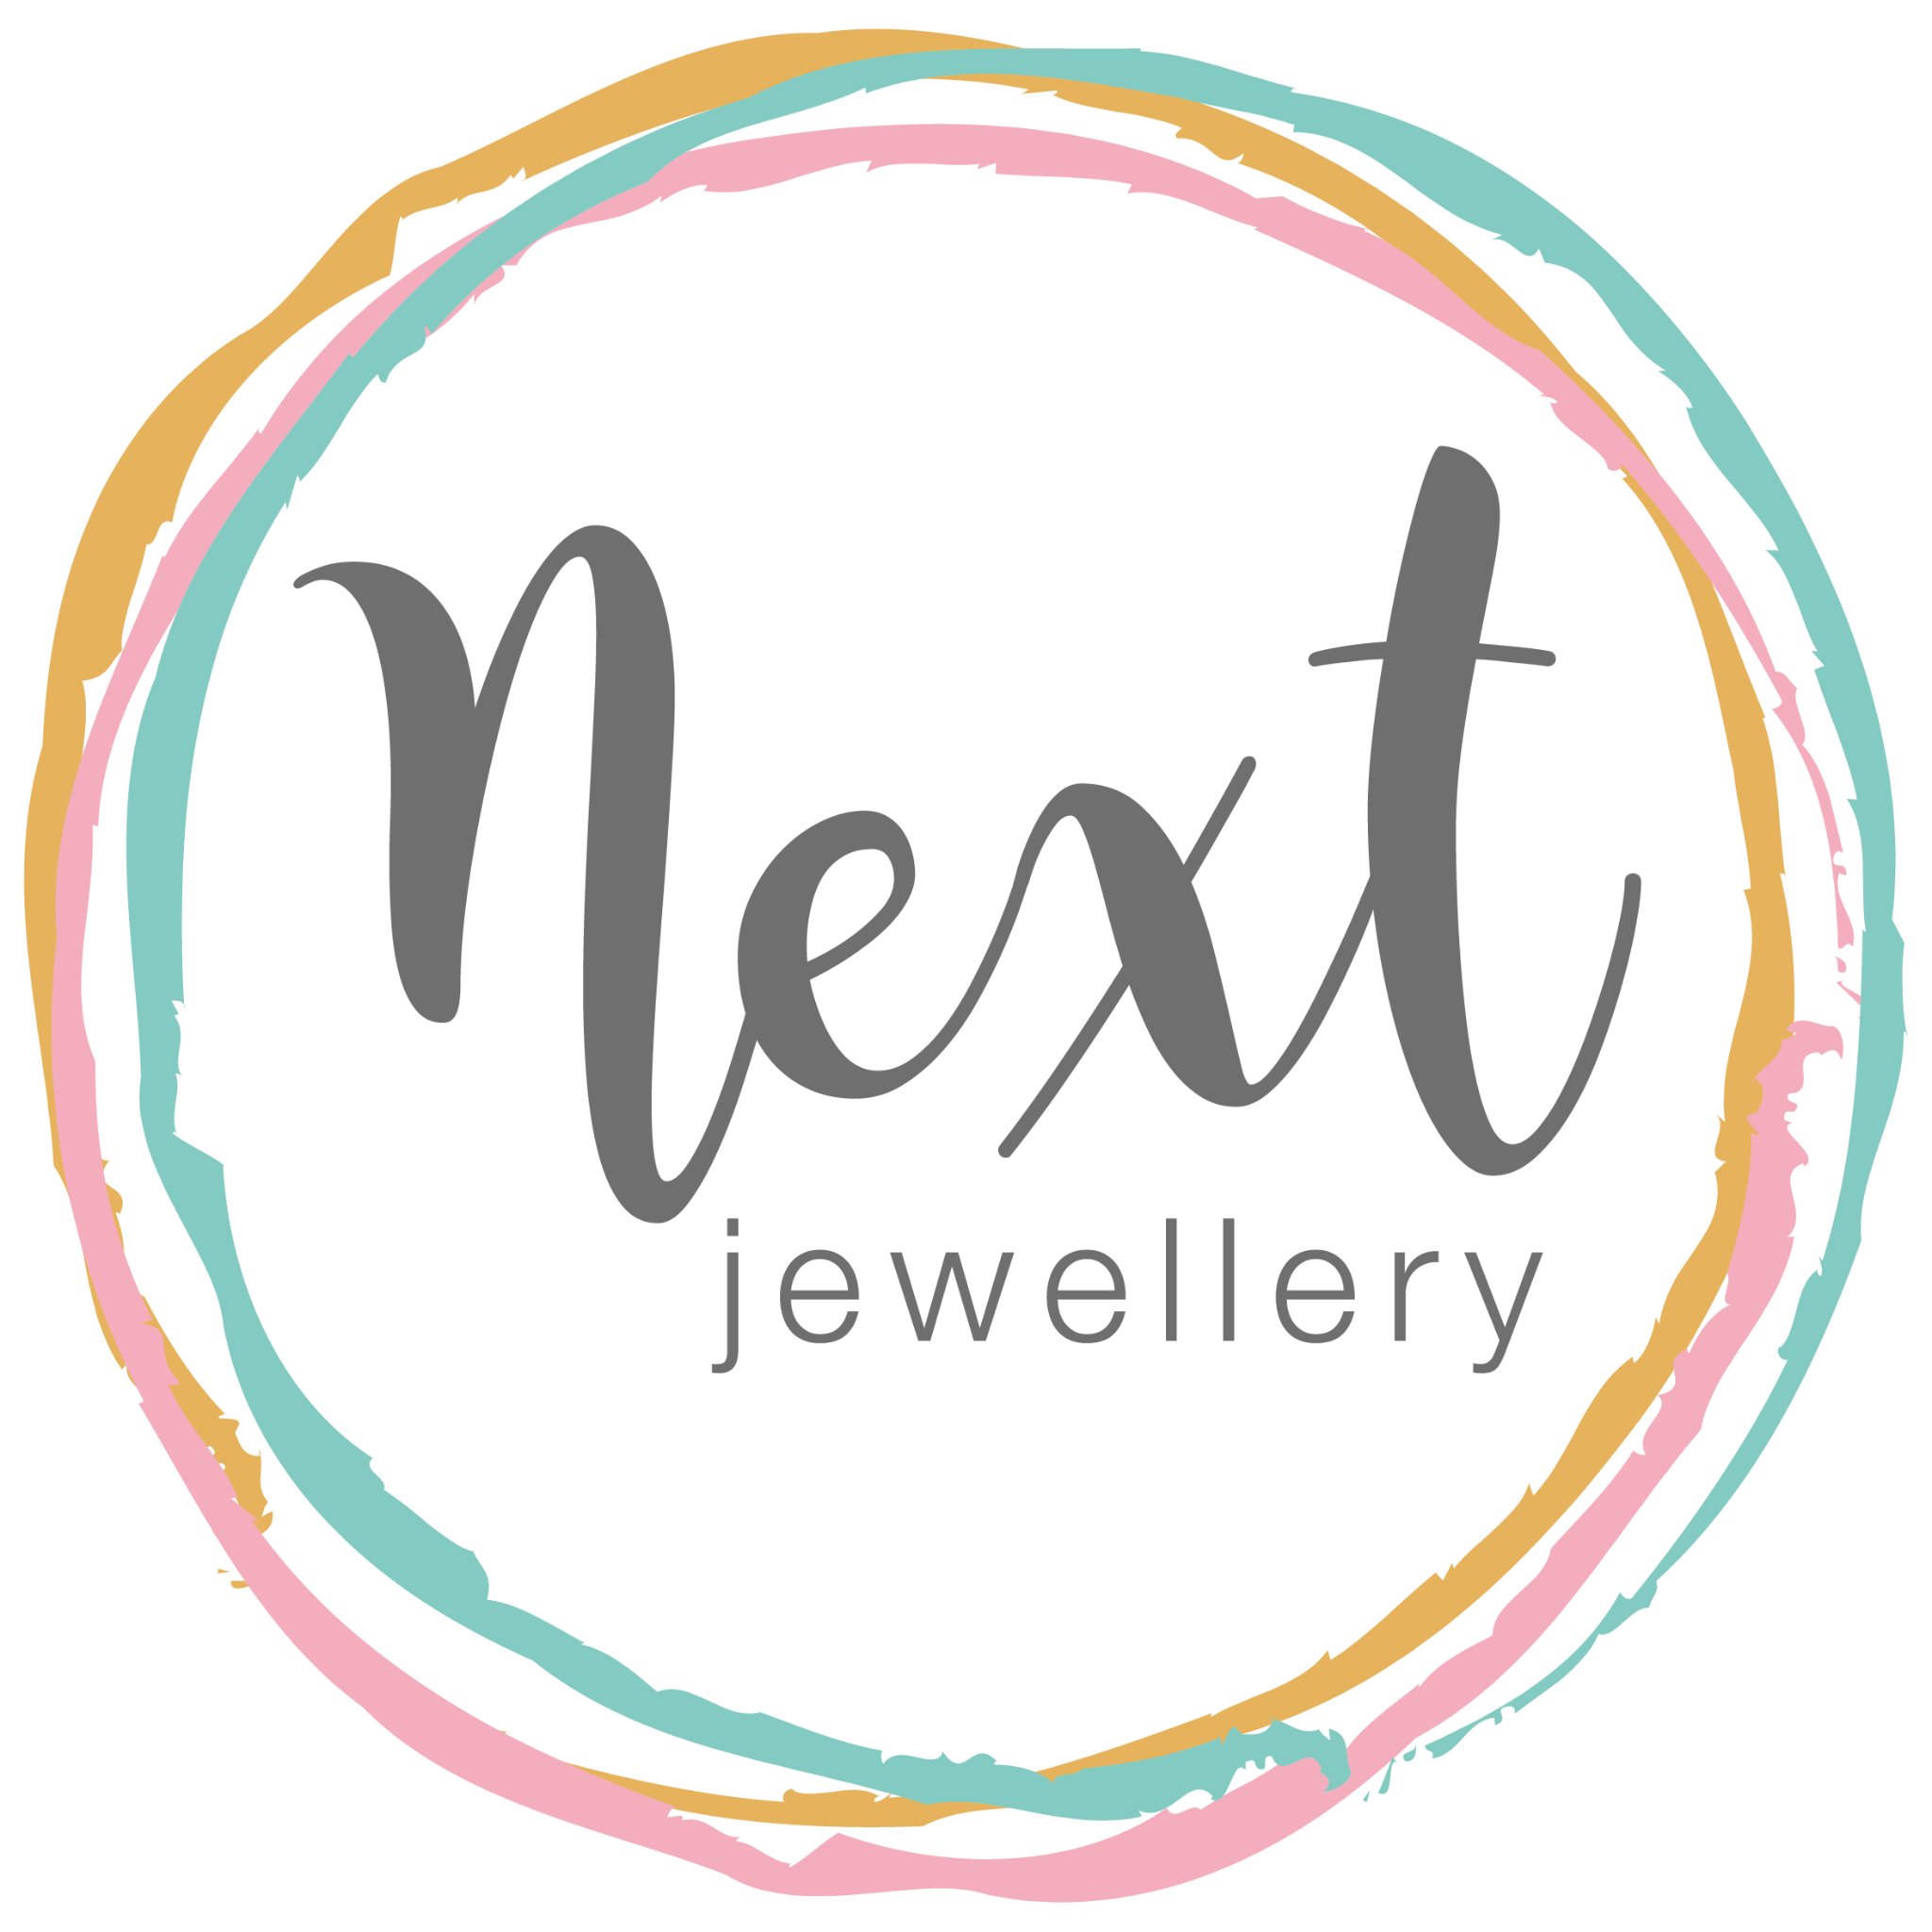 Next Jewellery